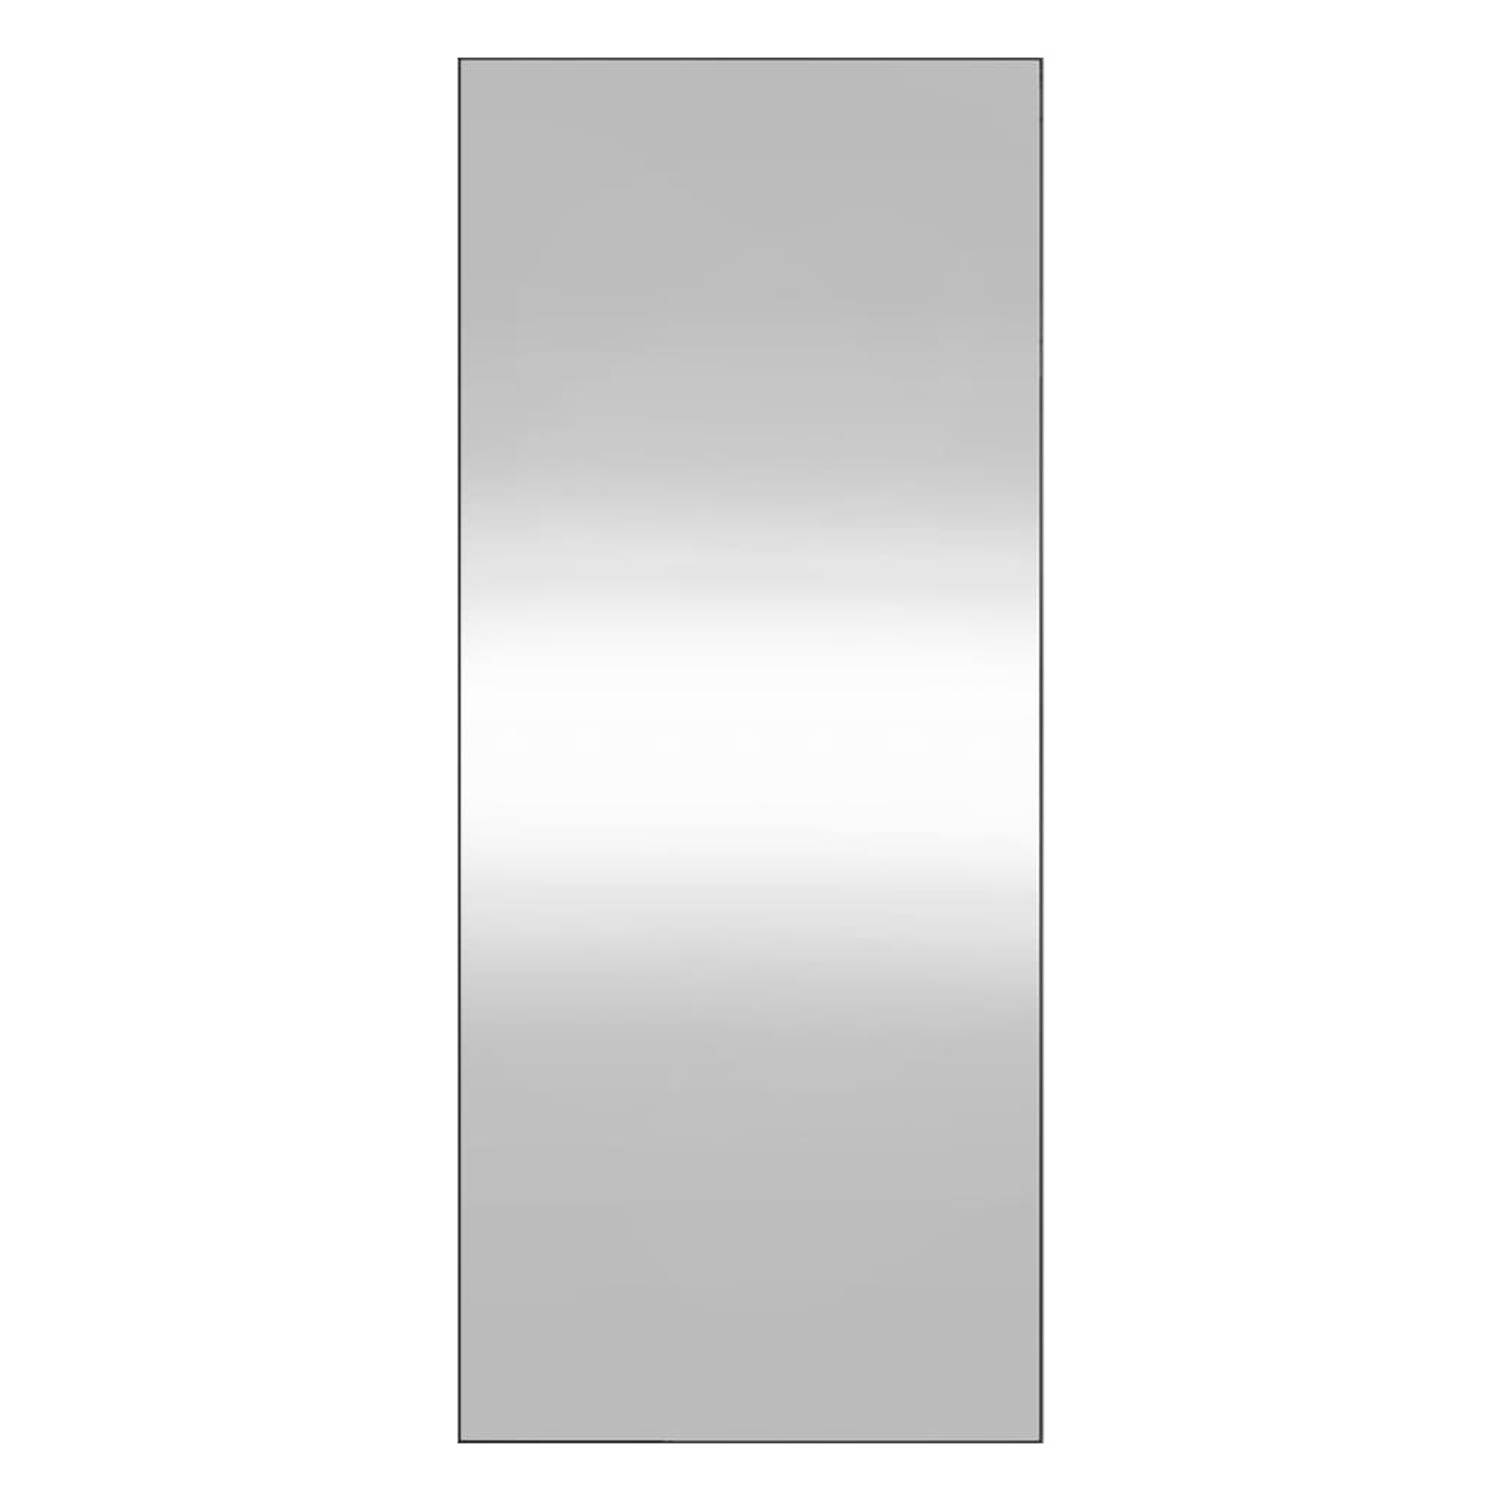 The Living Store Wandspiegel Classic 40x100 cm - Wandgemonteerd - Heldere weerspiegeling - Veelzijdig te gebruiken - Inclusief montagehandleiding - Glas materiaal - The Living Stor